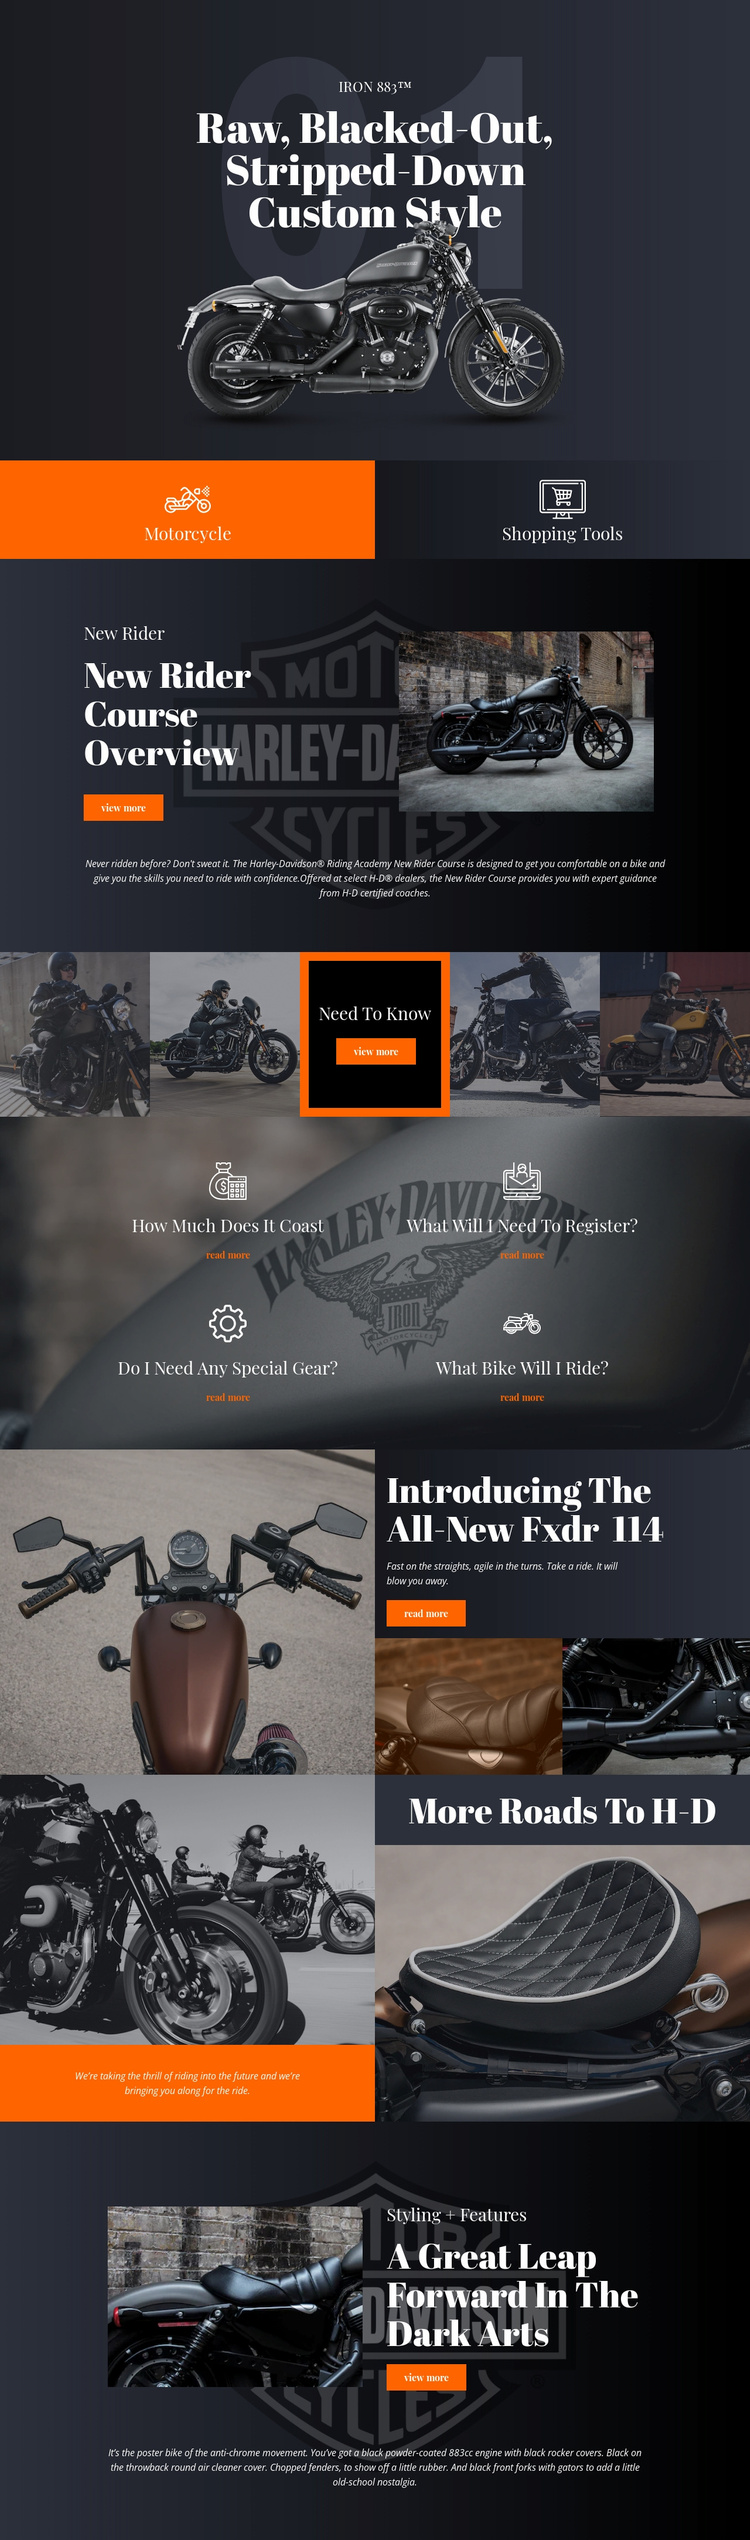 Harley Davidson Website Template